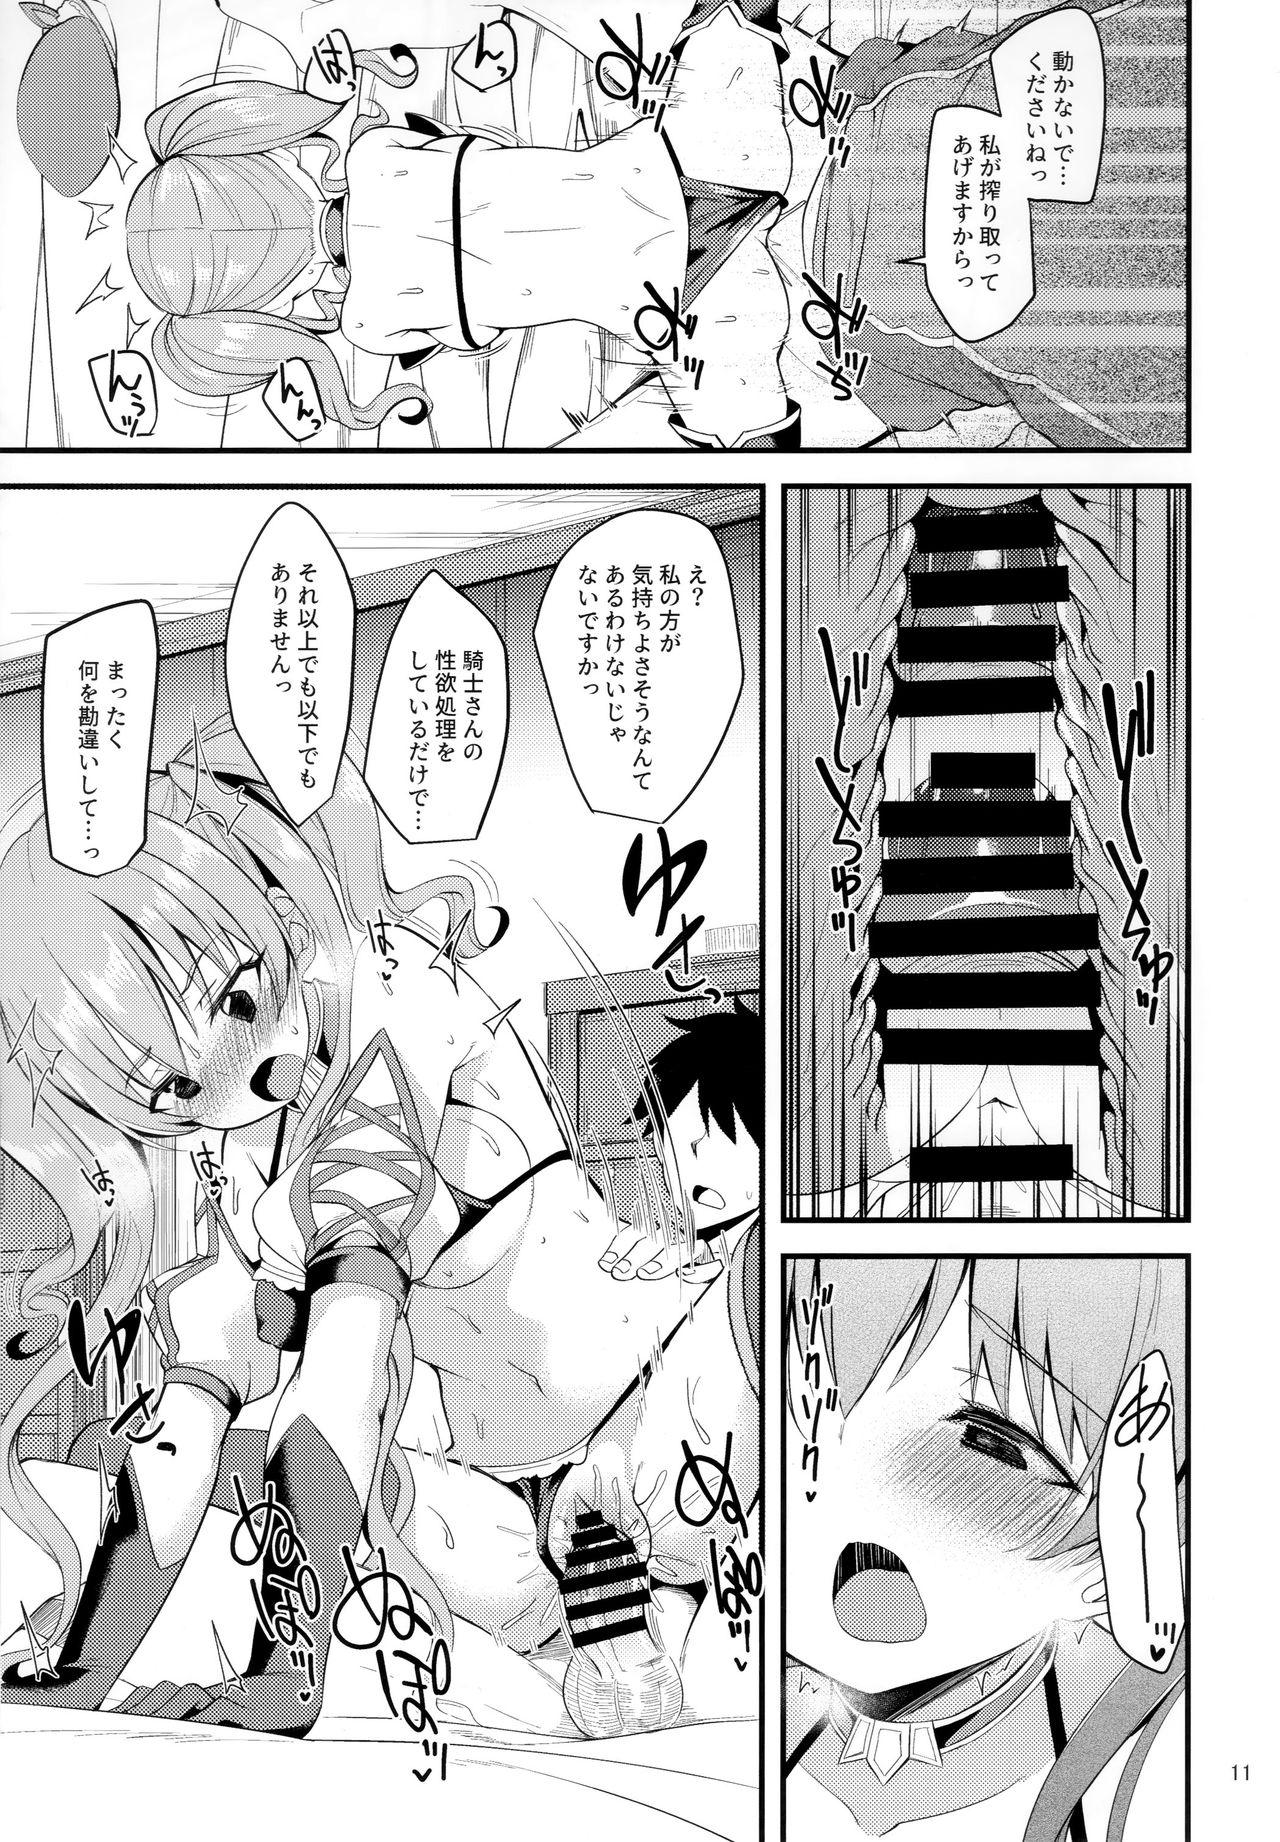 Blowjobs Tsumugi Make Heroine Move!! 02 - Princess connect Sexy Girl - Page 10